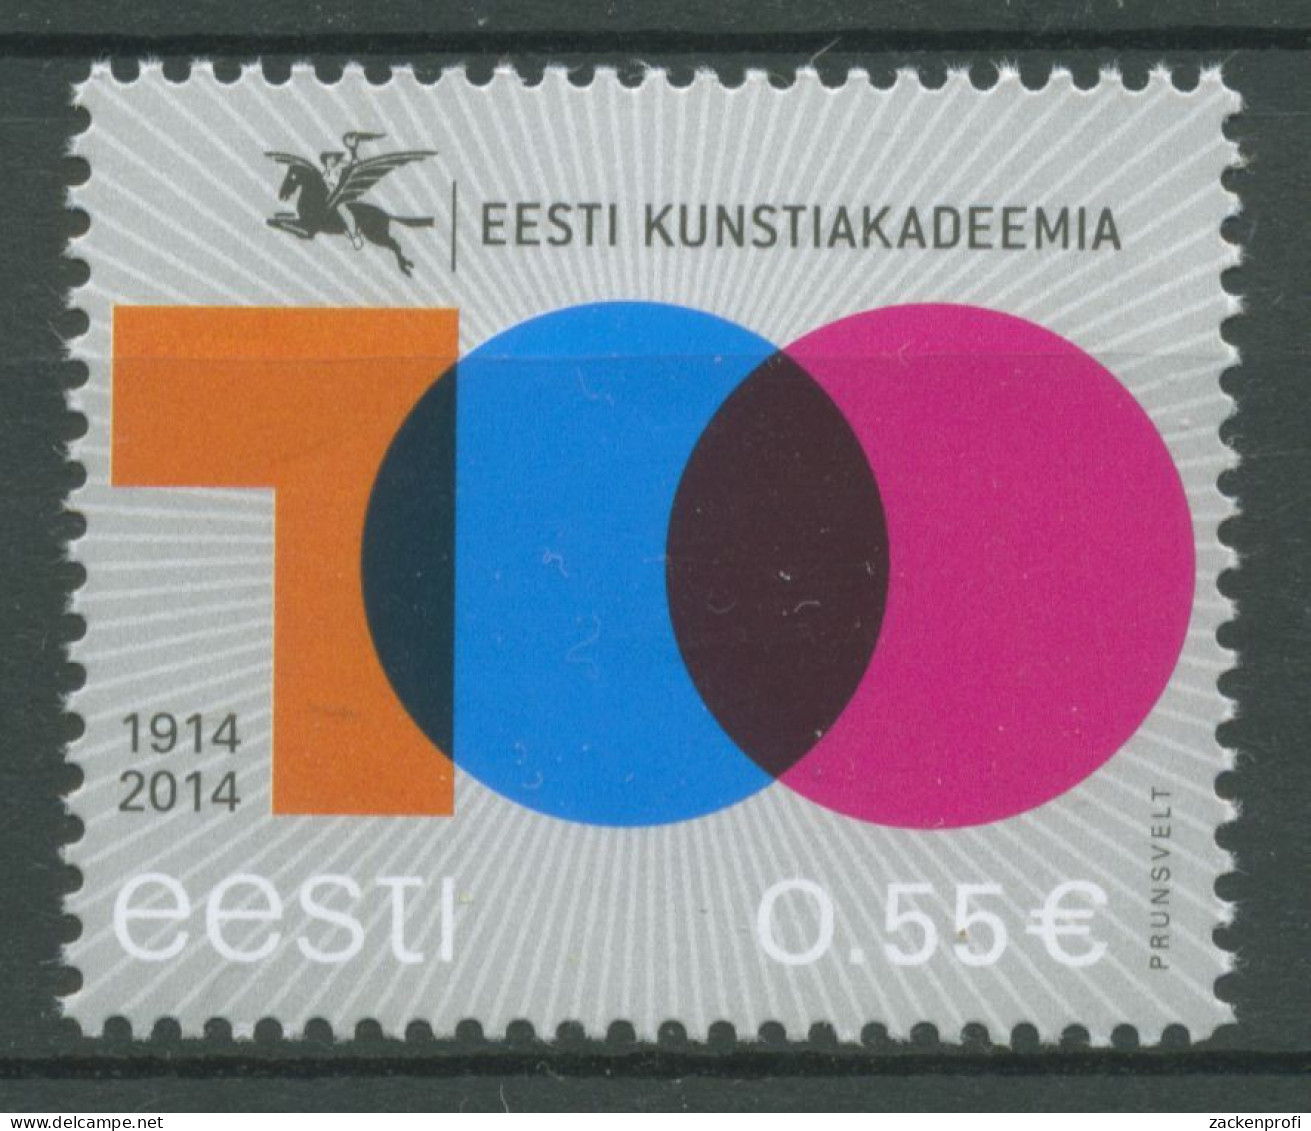 Estland 2014 Kunstakademie 804 Postfrisch - Estonie